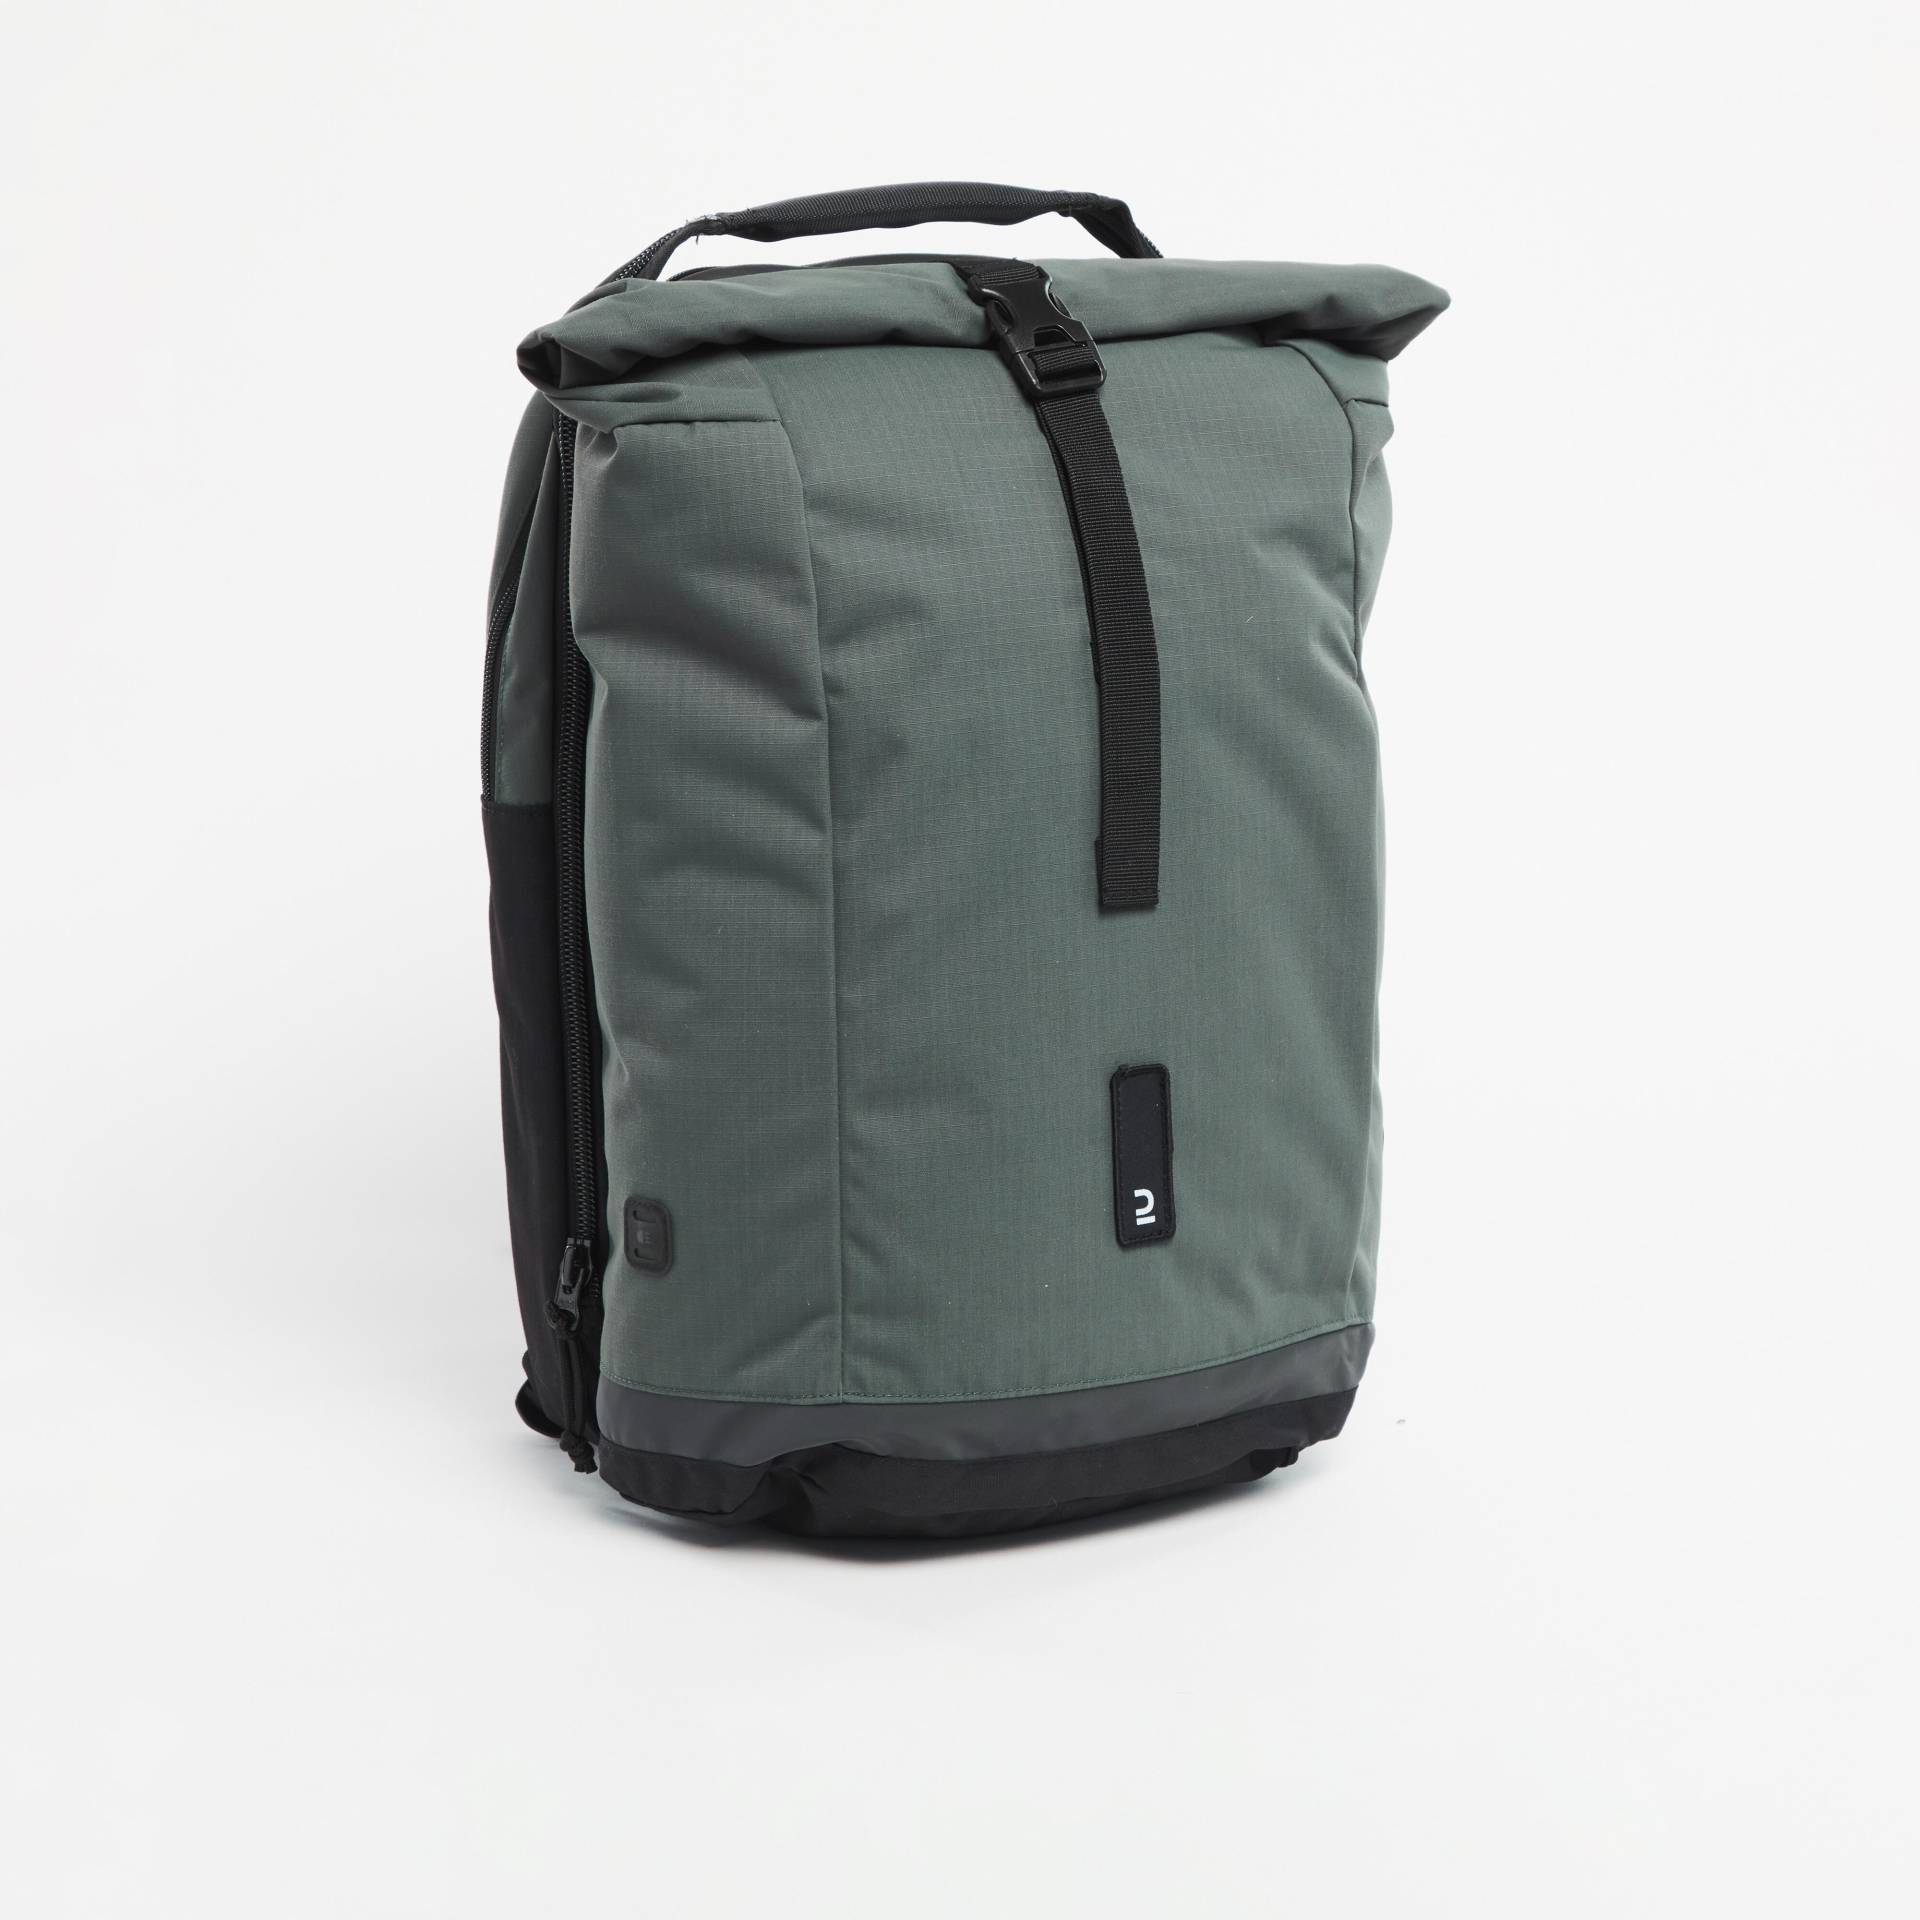 Doppel-Fahrradtasche Gepäcktasche Rucksack für Gepäckträger 27 Liter grün/grau von BTWIN